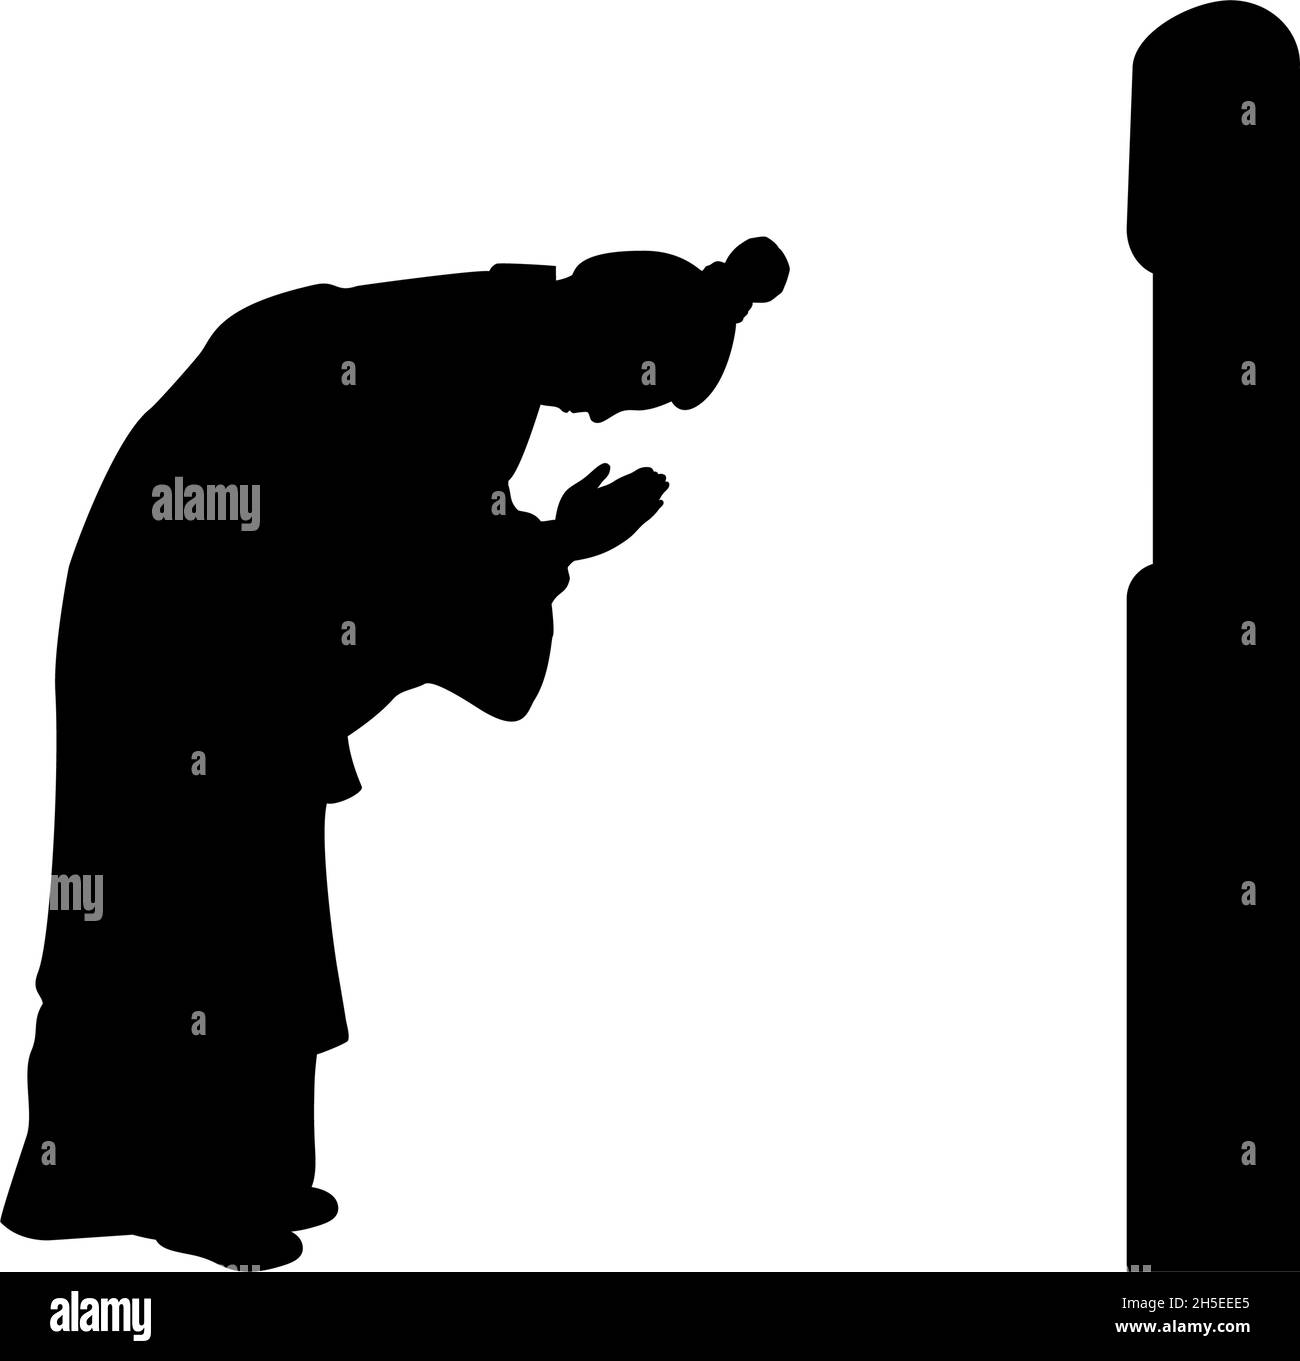 Silhouette eines Mannes, der das Ahnengrab anbetet. Tag der Grabfegung oder das Qingming- oder Ching-Ming-Fest. Stock Vektor